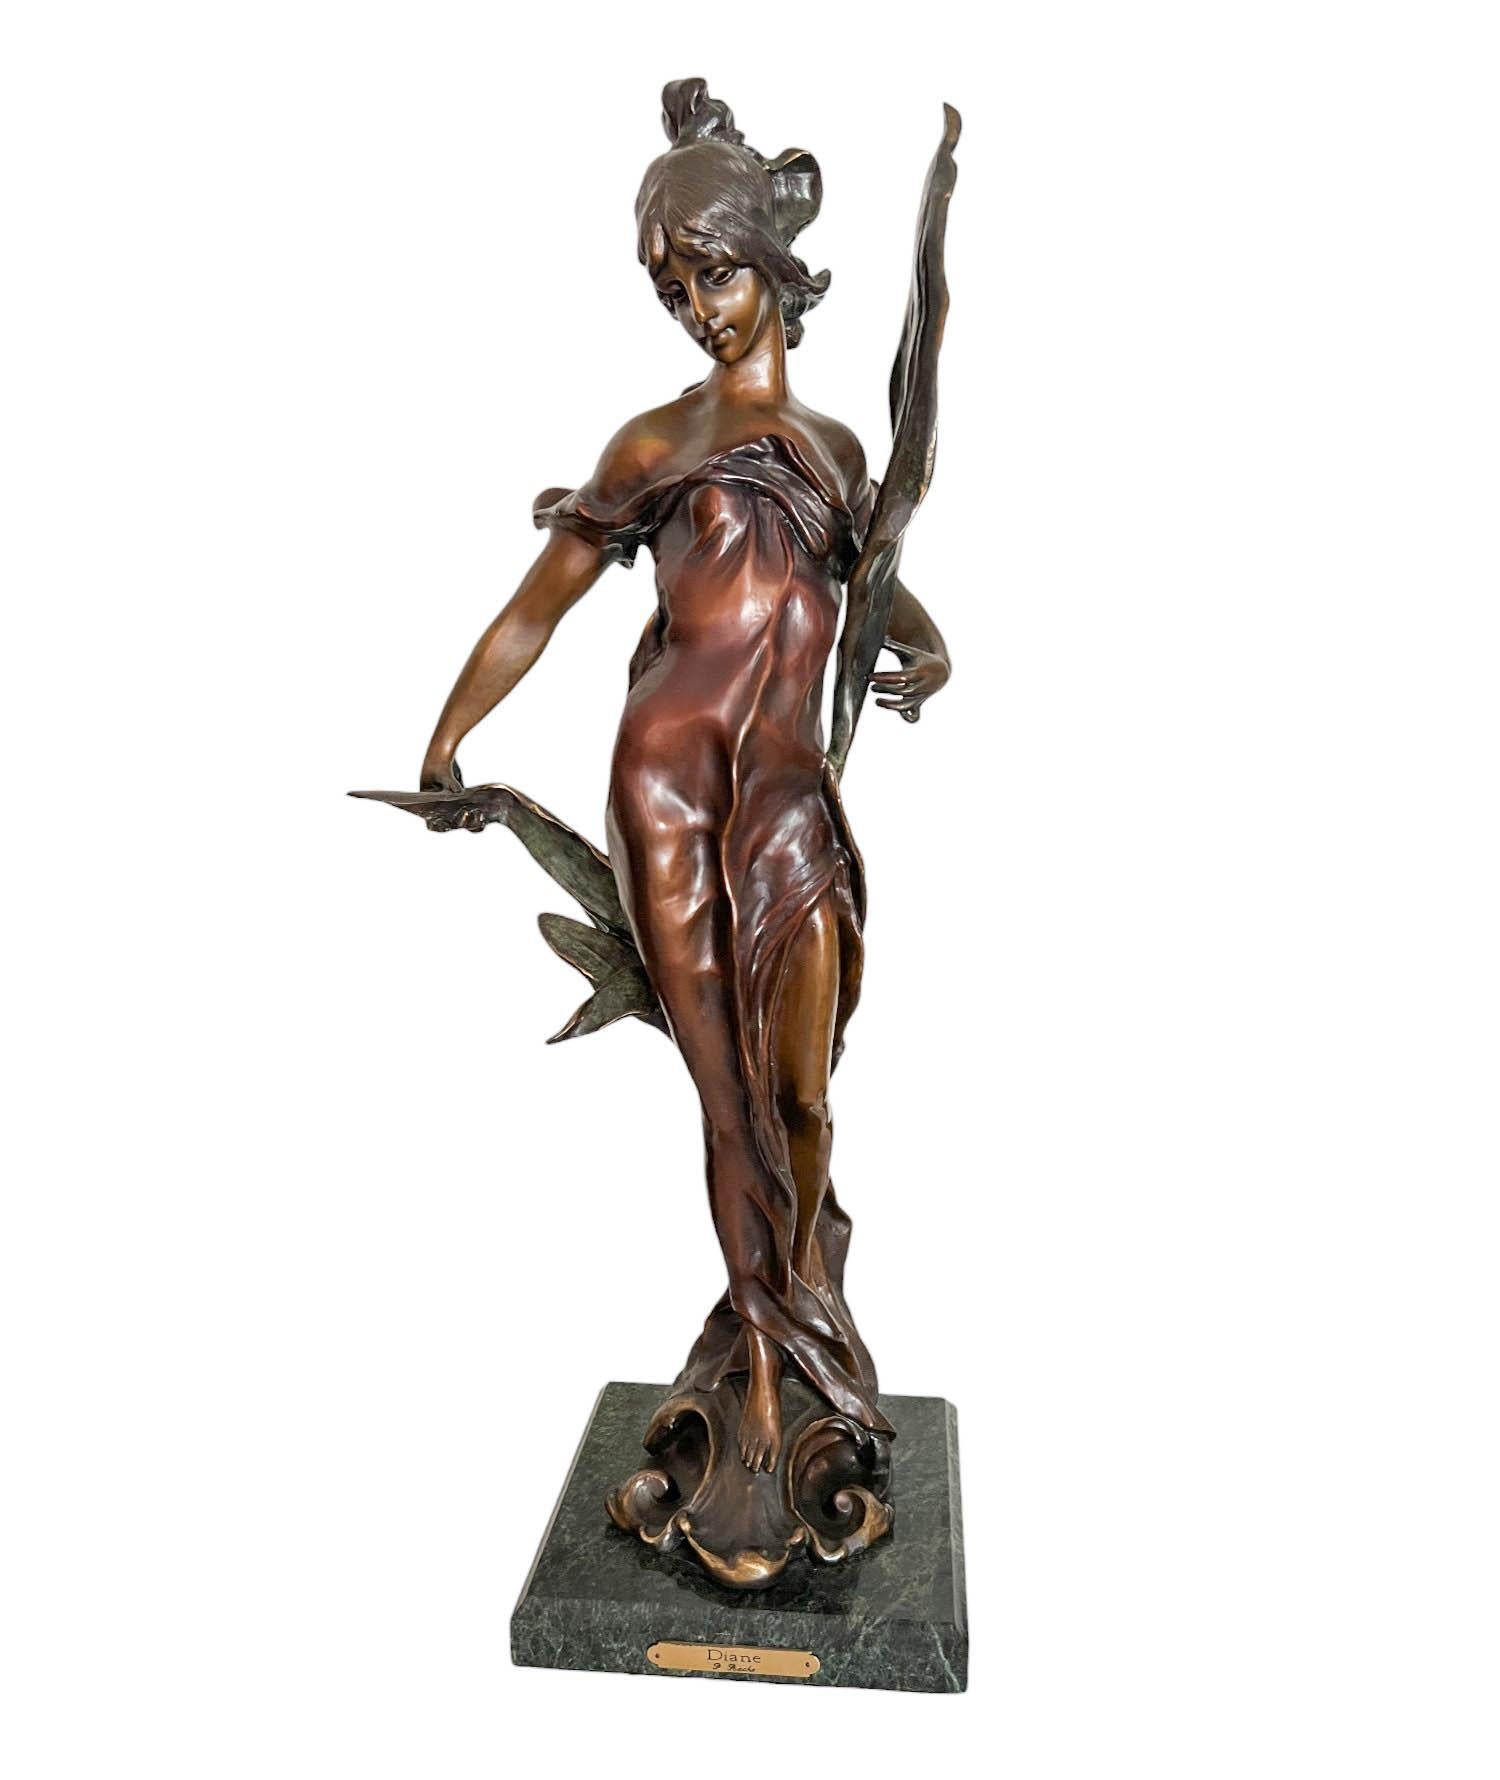 Fonte en bronze de Diane, déesse de la chasse, d'après Pierre Roche (français 1955 - 1922). La sculpture repose sur une base carrée en marbre vert.

Dimensions :

Base : 8